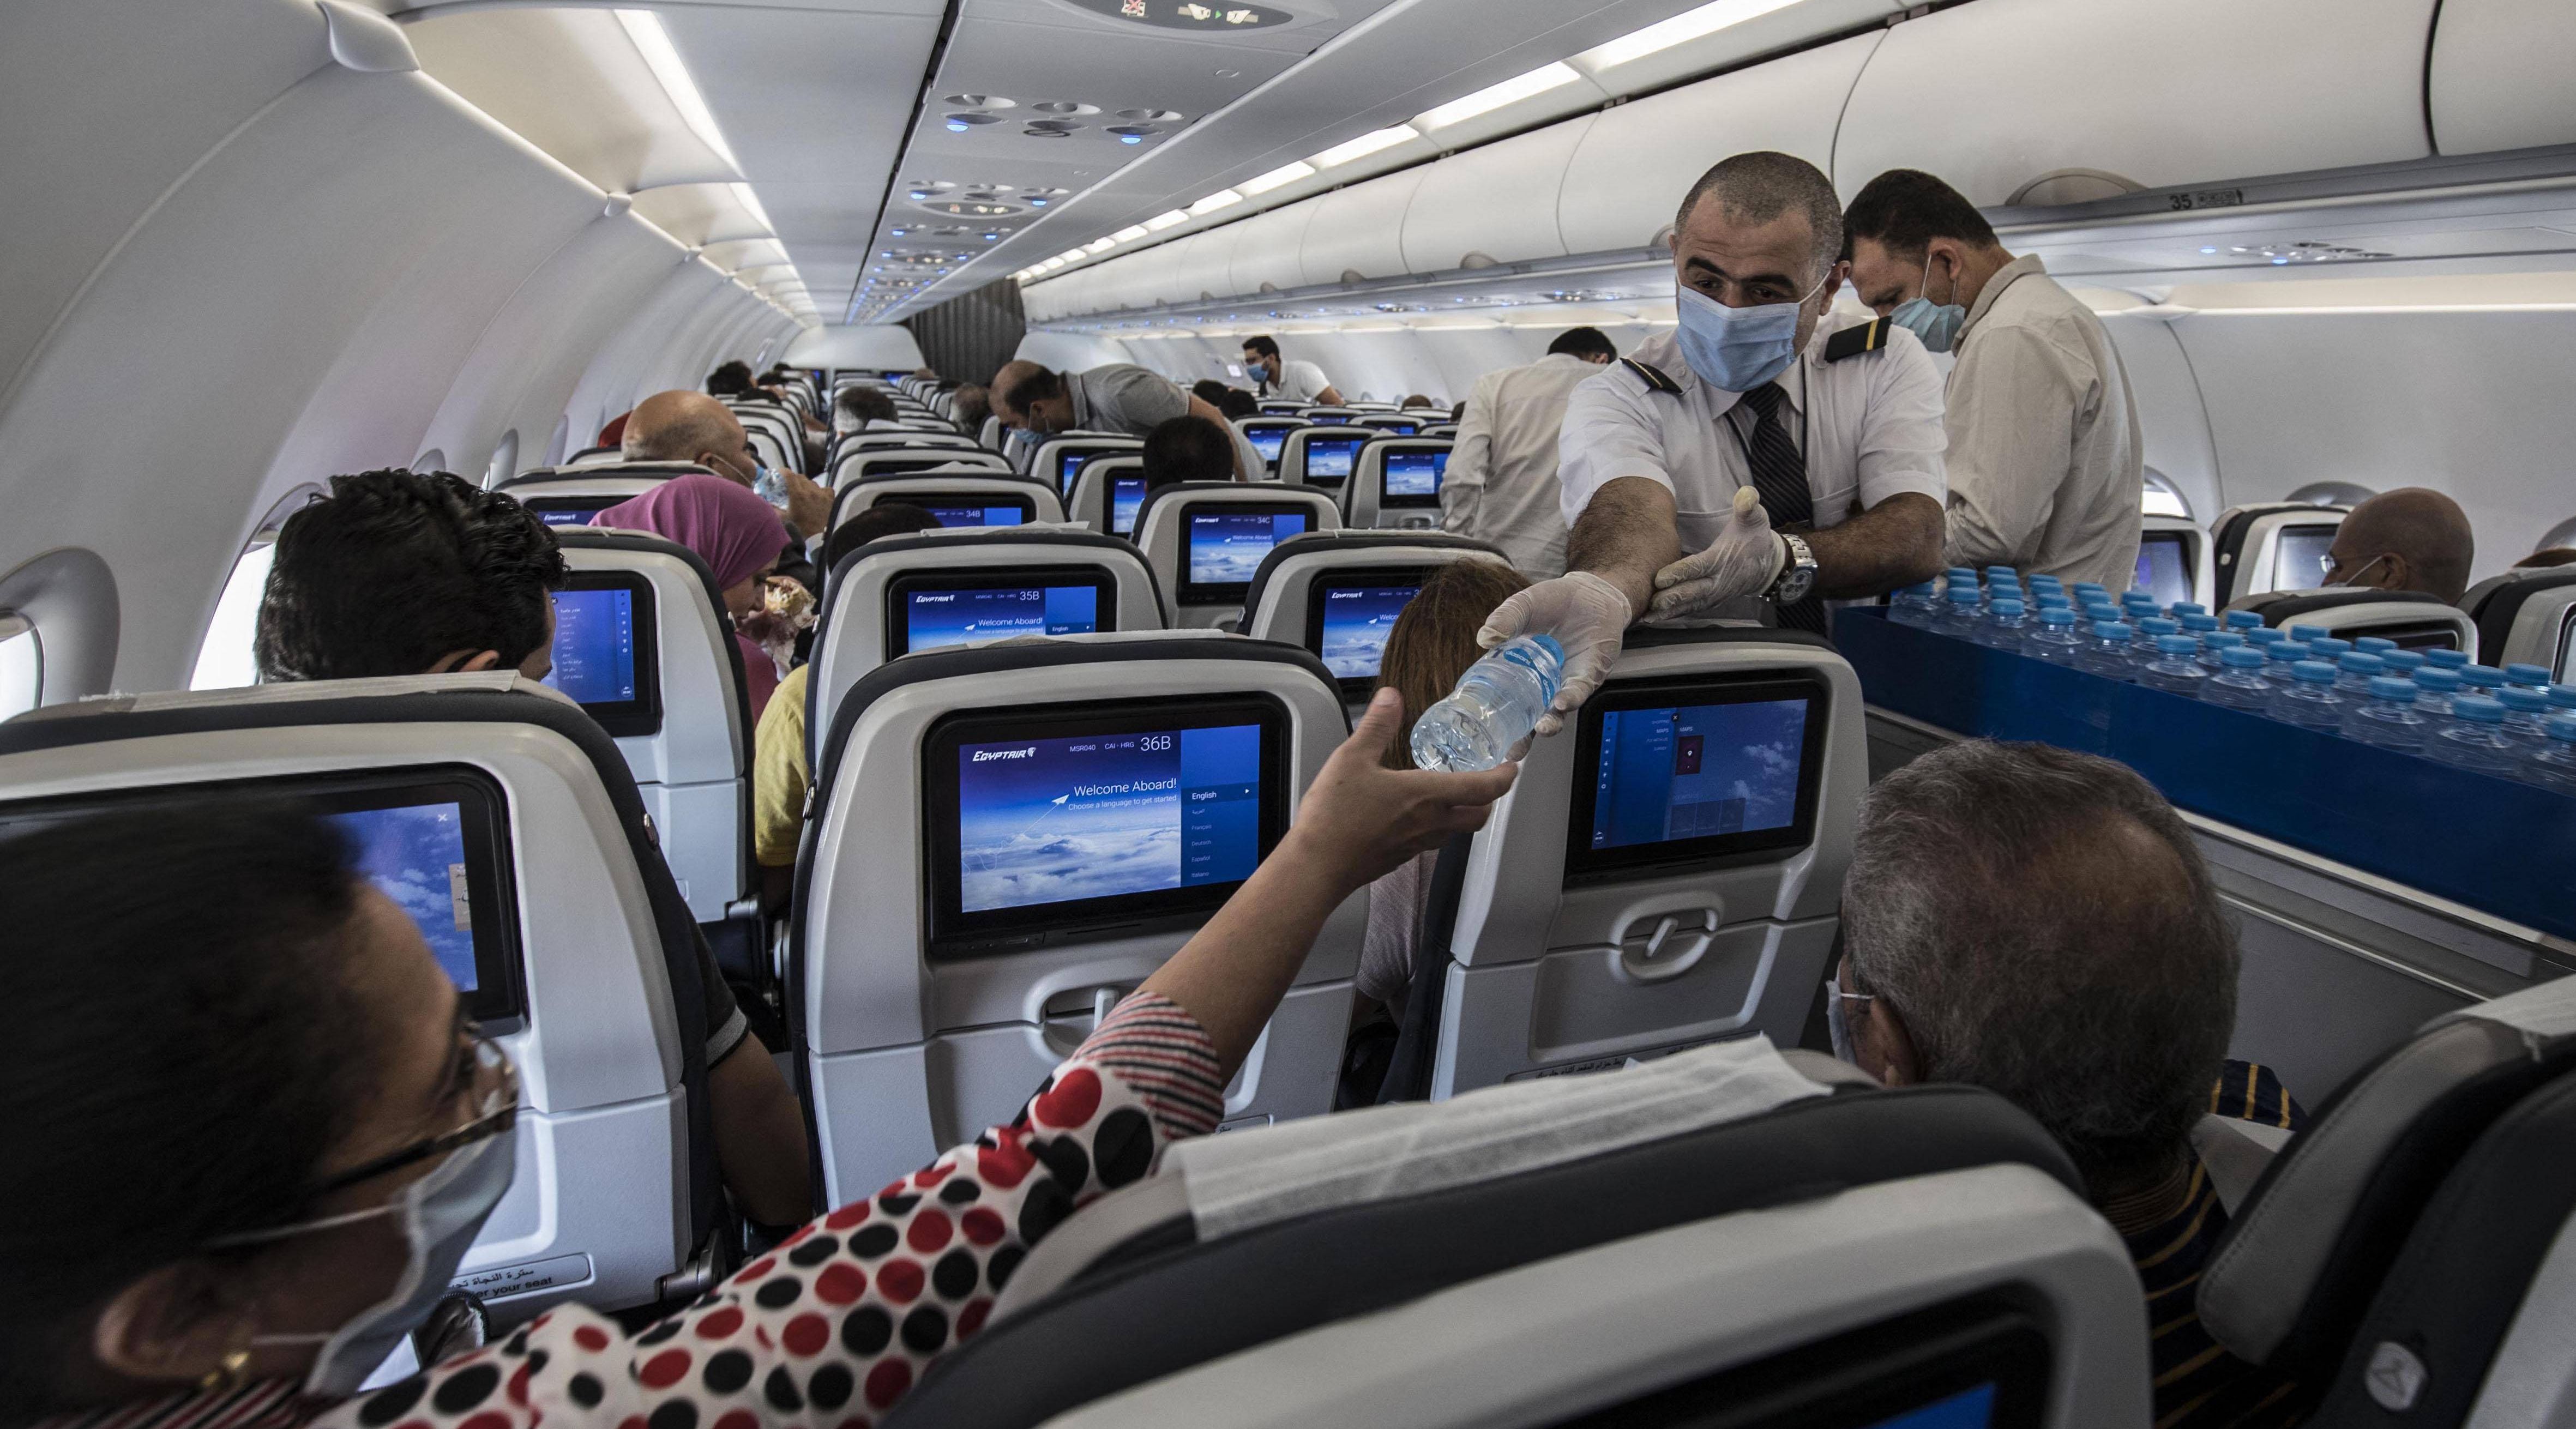 مخاطر الإصابة بالعدوى منخفضة أثناء السفر الجوي وبالرغم من ذلك يجب على المسافرين اتباع إجراءات السلامة